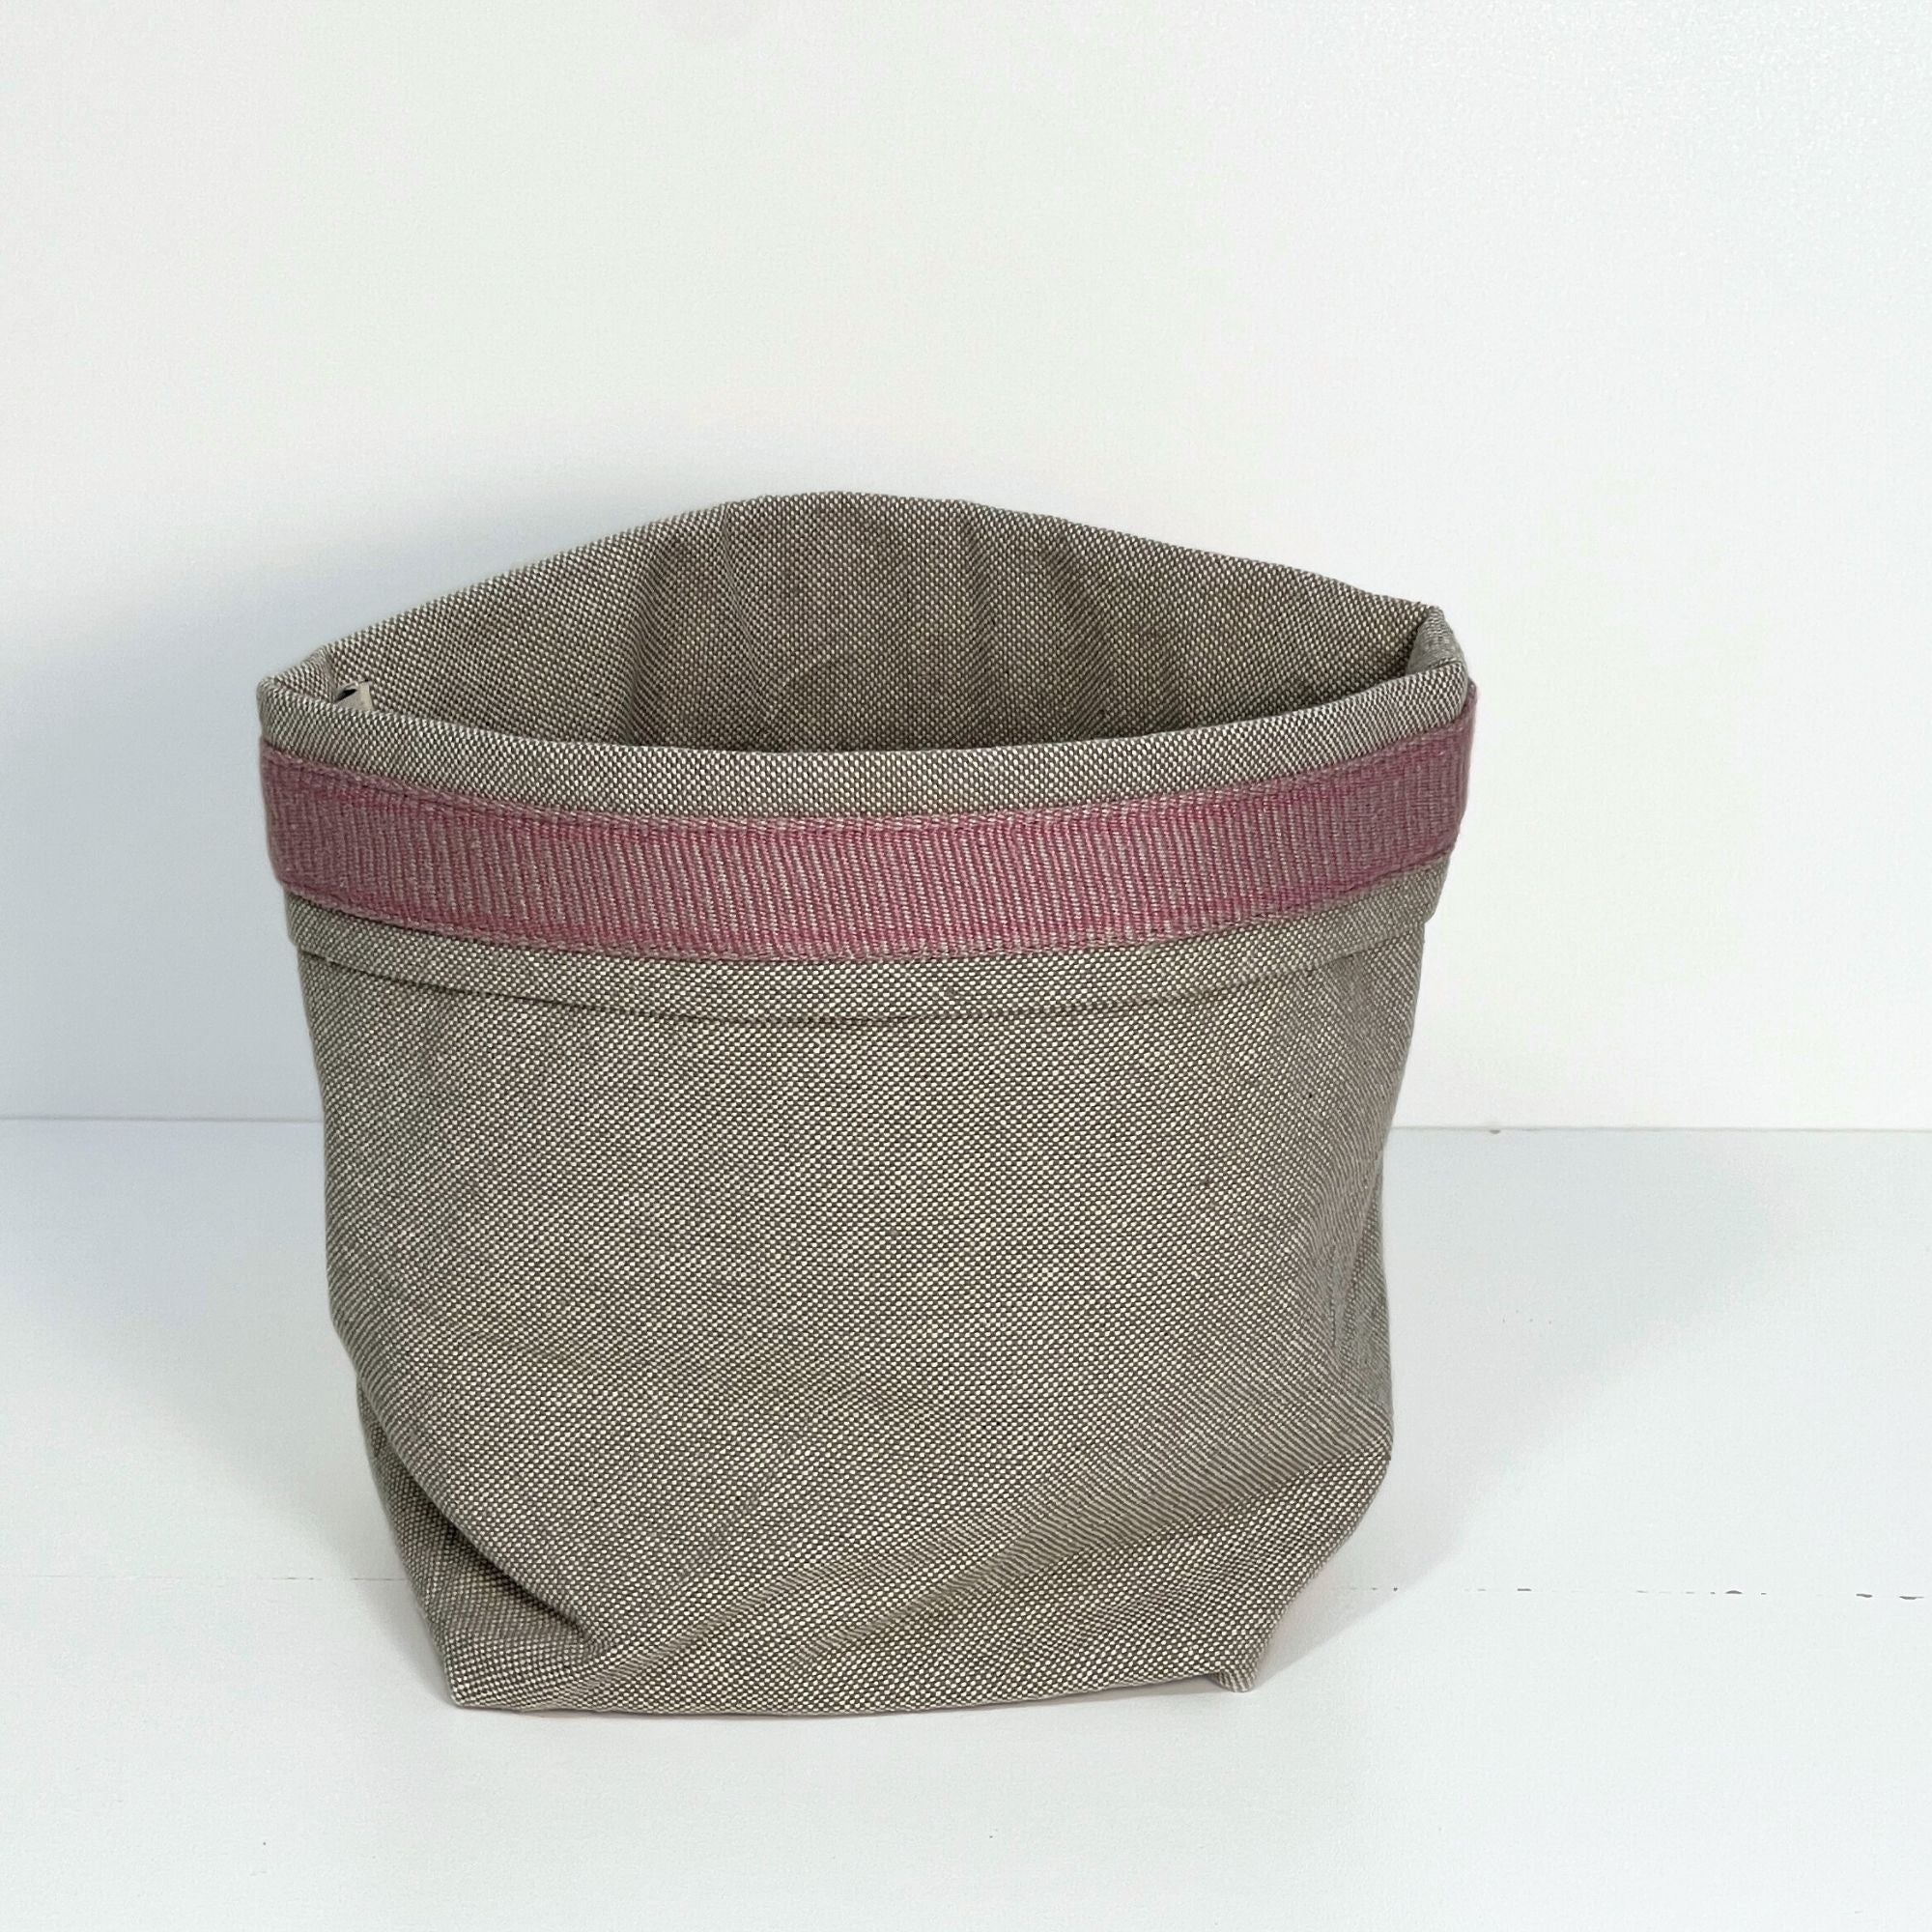 Upcycled fabric basket